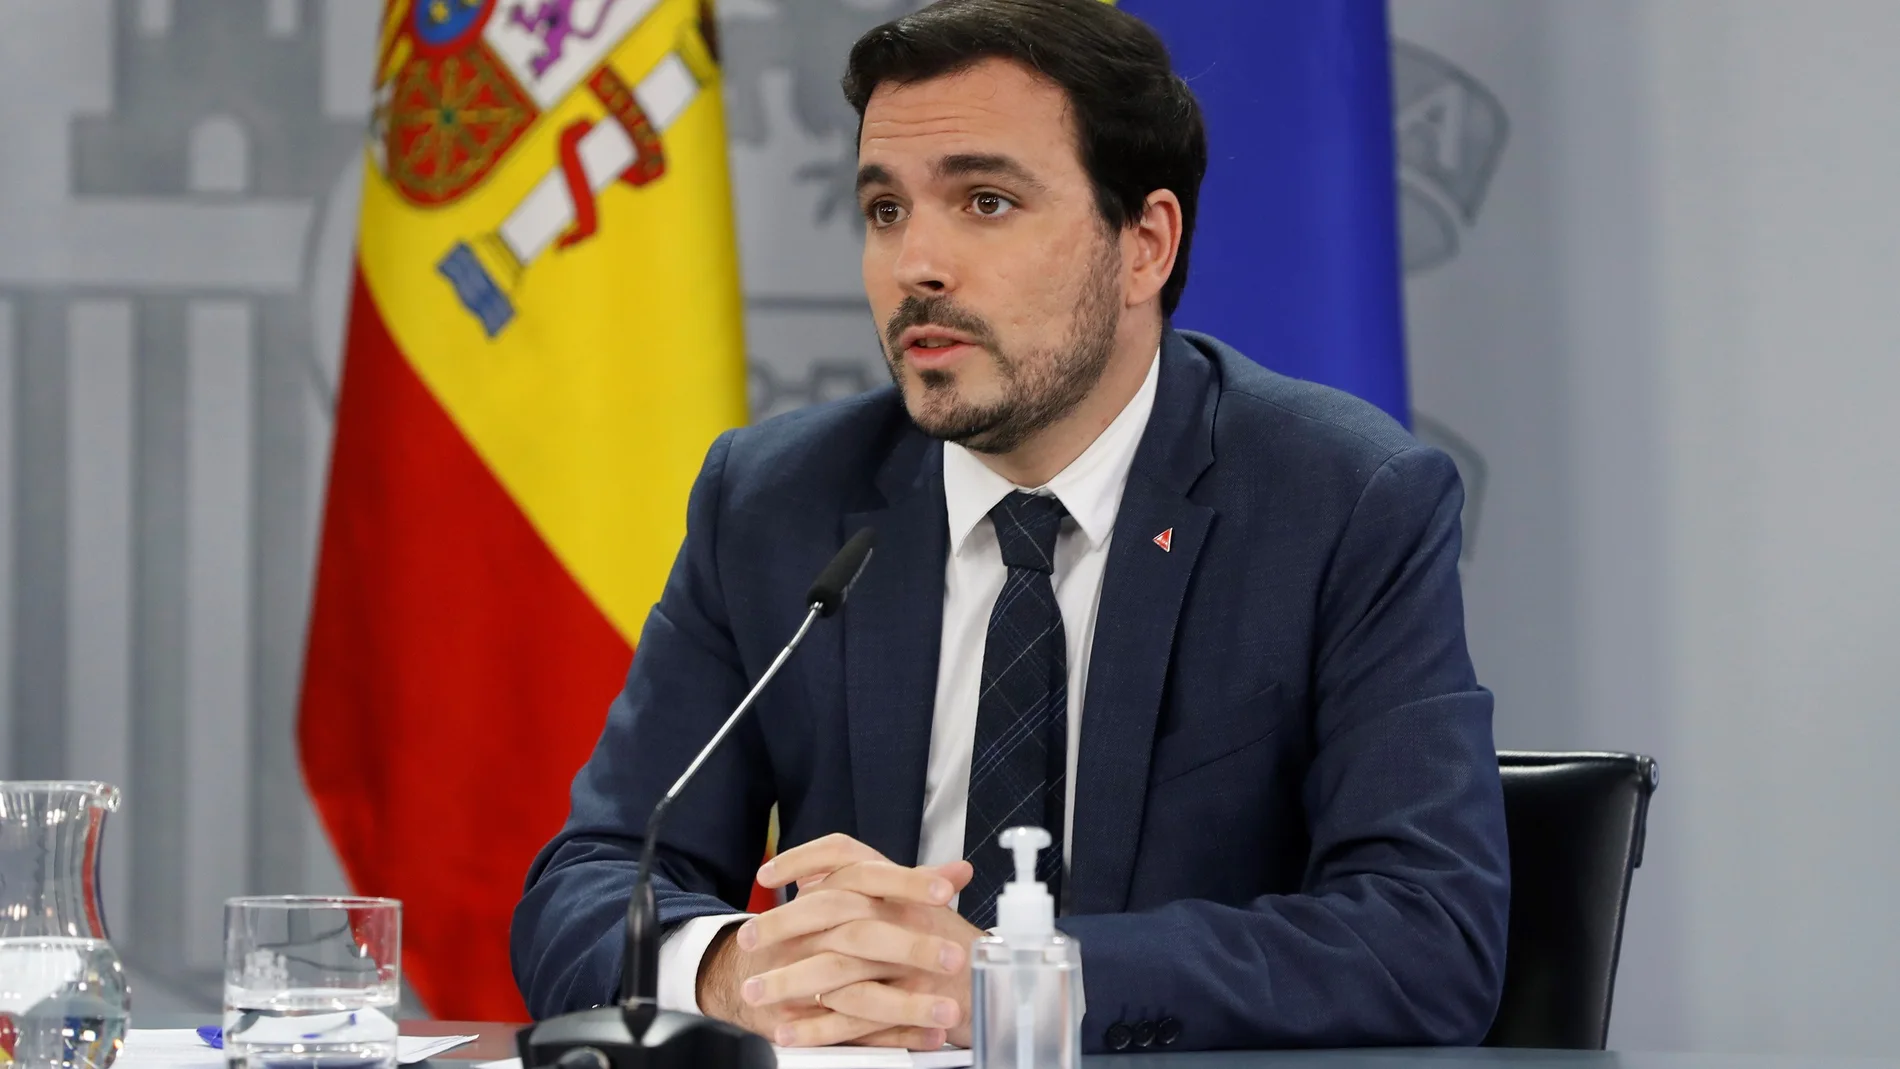 El ministro de Consumo, Alberto Garzón, participa en la rueda de prensa convocada tras la reunión semanal del Consejo de Ministros, este martes, en el complejo del Palacio de la Moncloa, en Madrid.